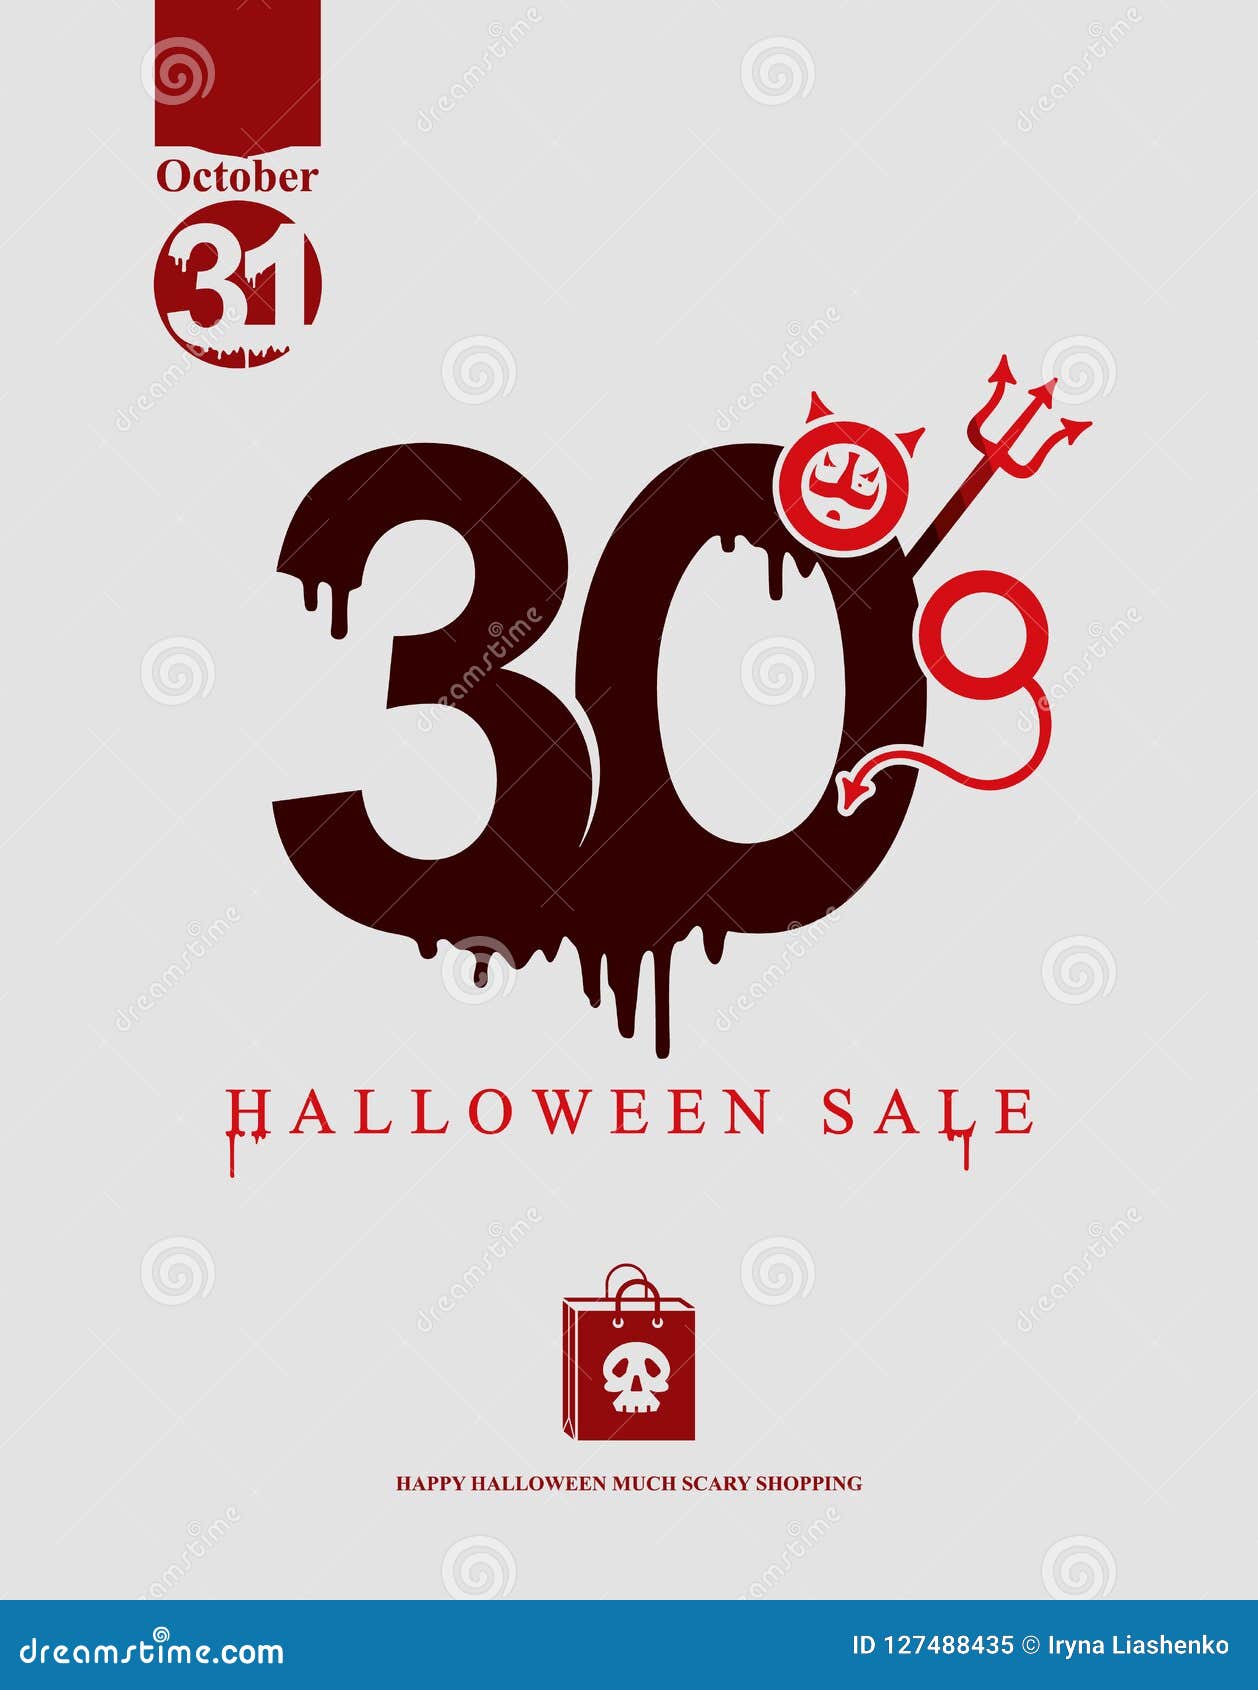 Halloweenowa sprzedaż Wektorowy szablonu sztandar wakacyjna sprzedaż Czerni plamy rysować postacie 30% Czarci ` s rozwidla i rogi uwypuklają w postaci procentu znaka